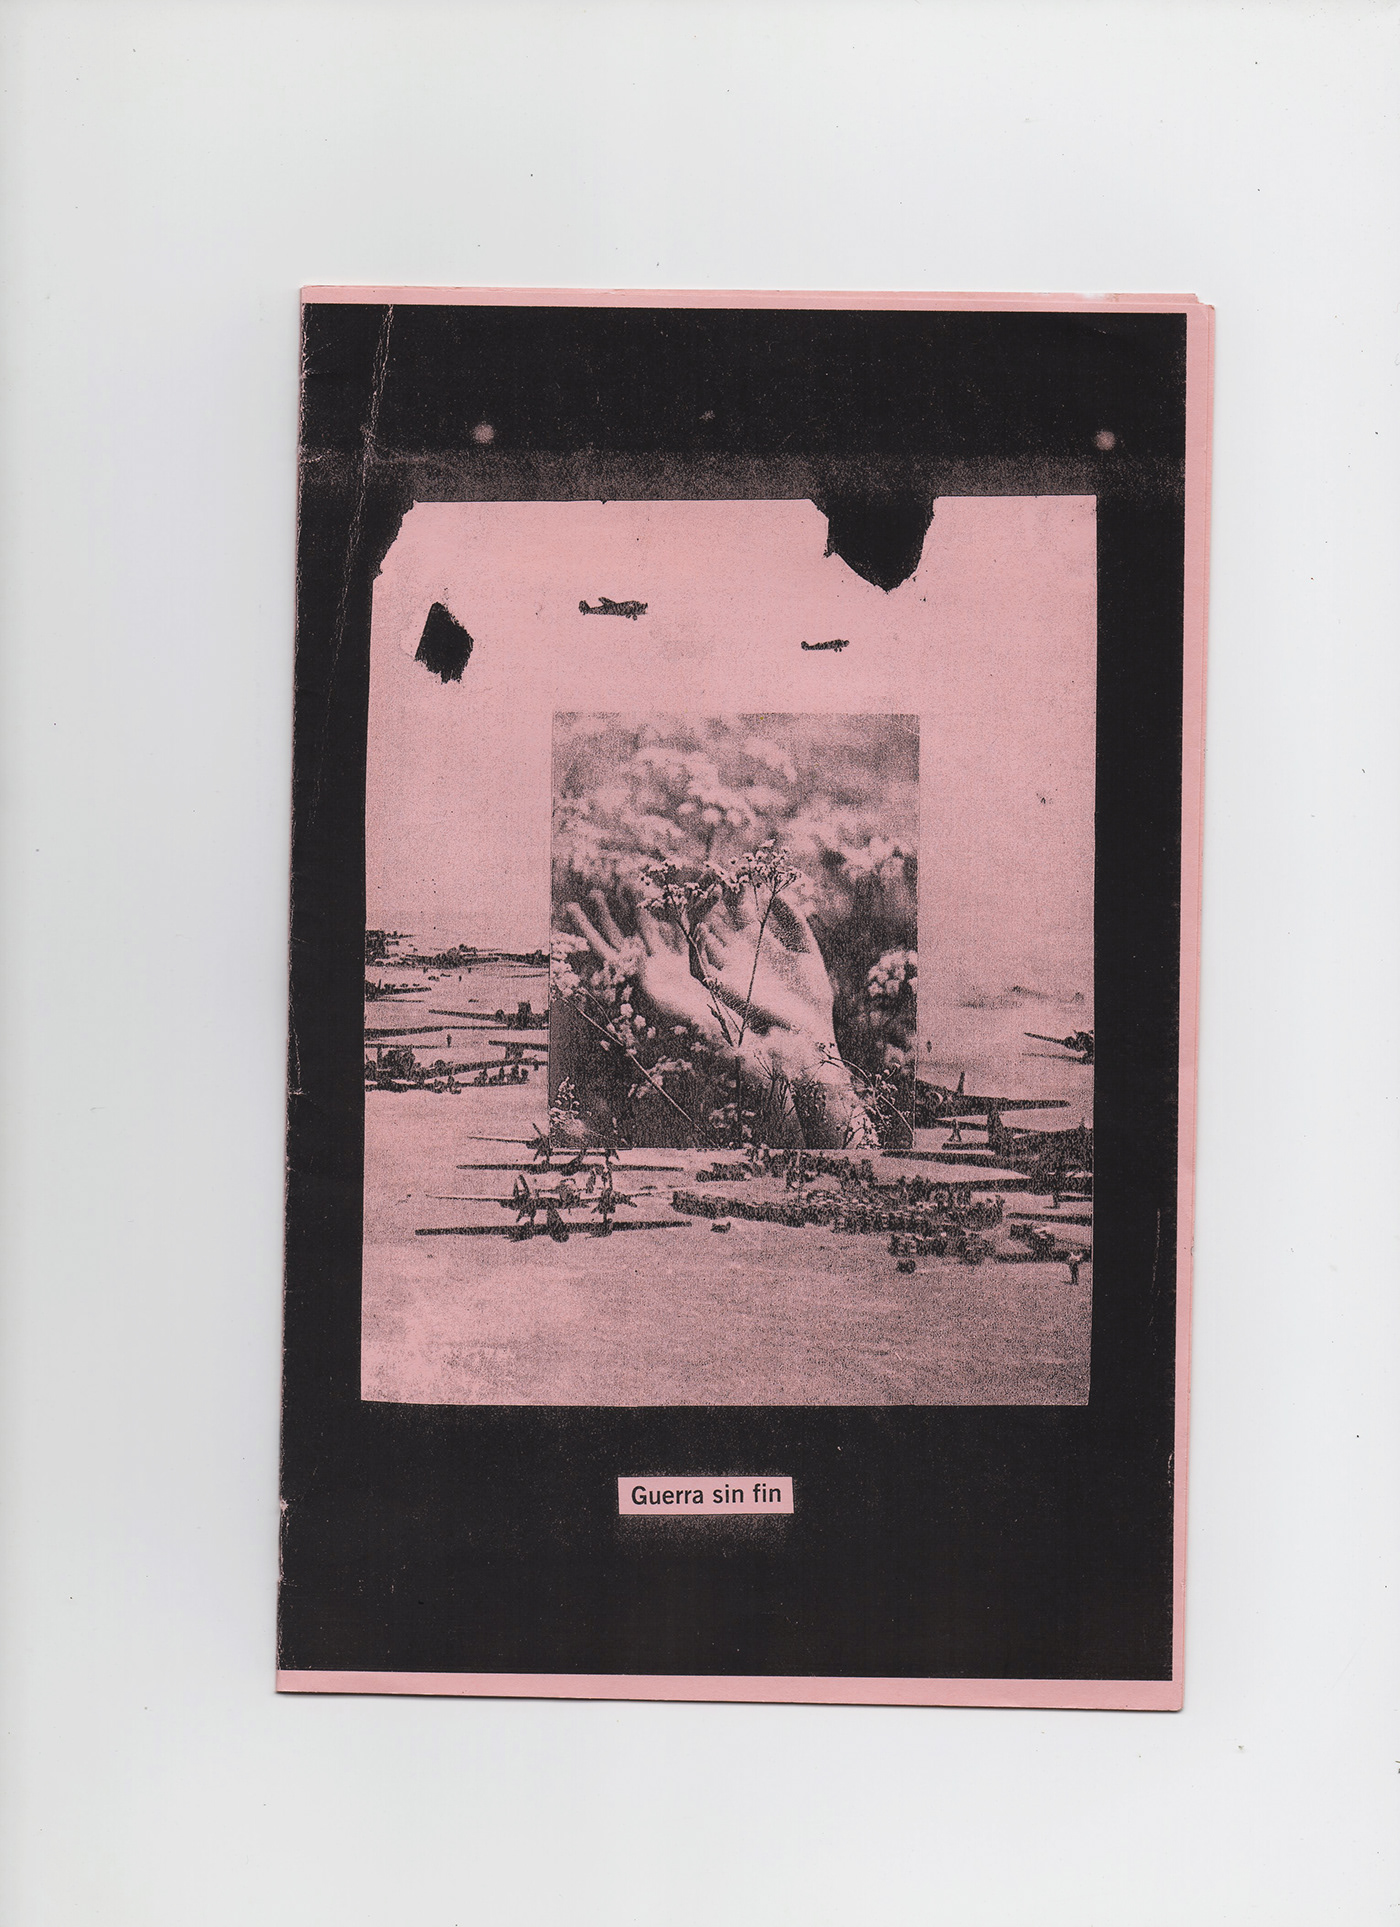 Ana Frank experimentación fanzine fotocopia Portada segunda guerra mundial